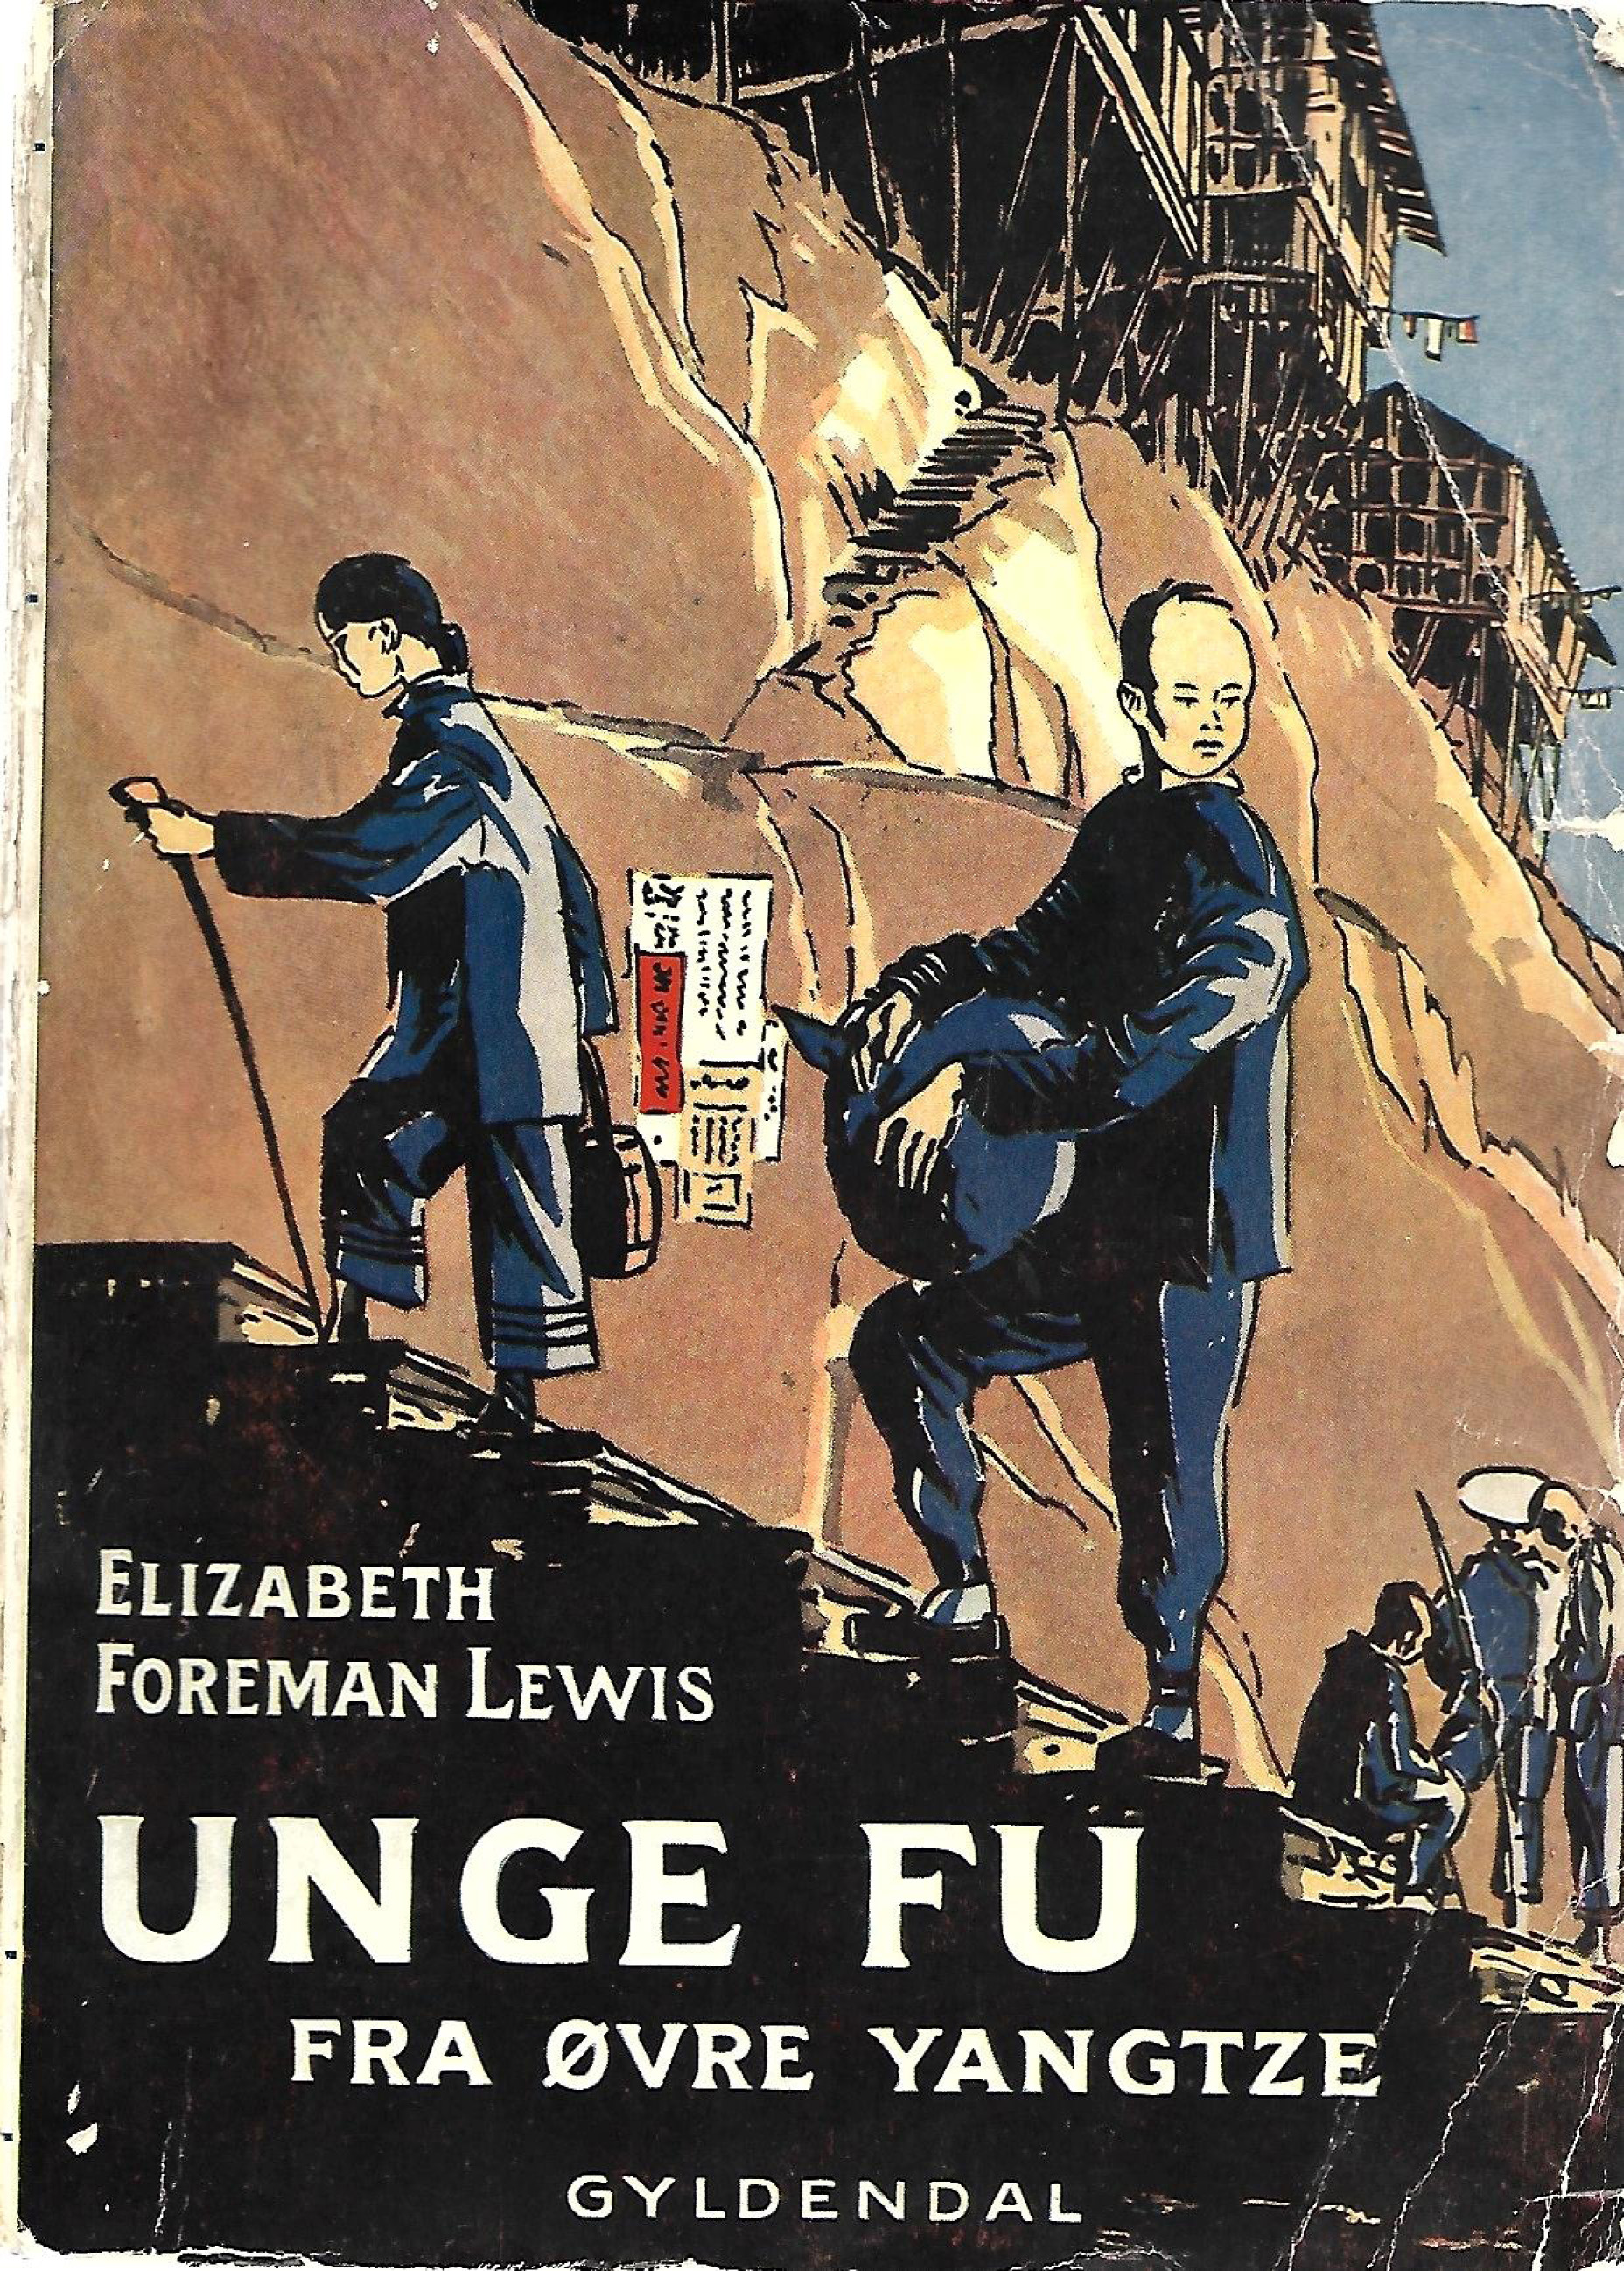 Unge Fu fra øvre Yangtze - Elizabeth Foreman Lewis 1934-1